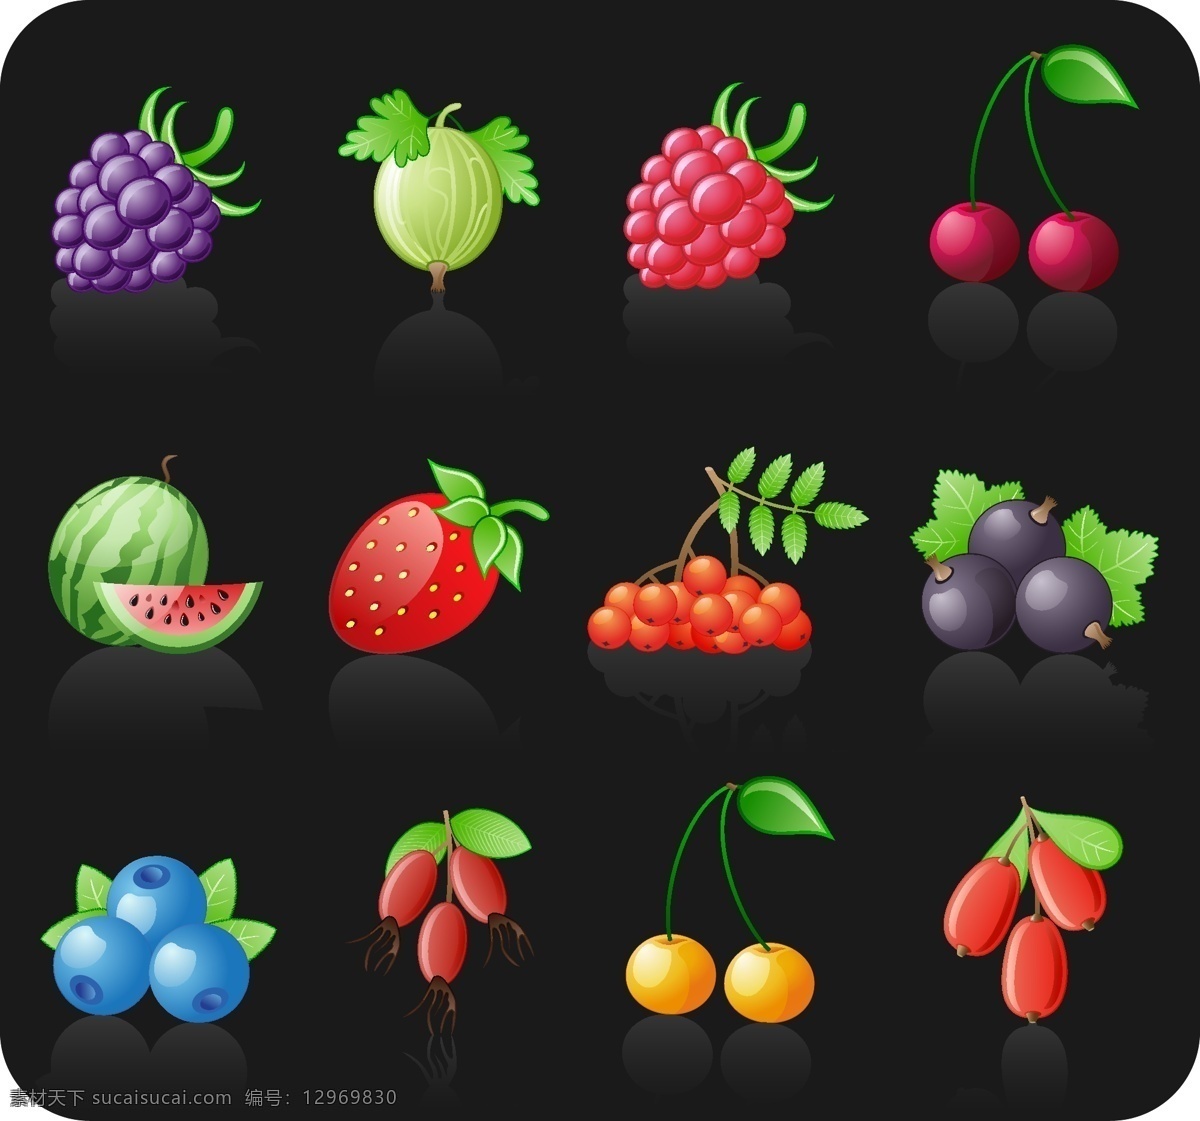 种 新鲜 水果 图标 矢量 蓝莓 梨子 樱桃 西瓜 草莓 桑葚 食品果蔬 分层